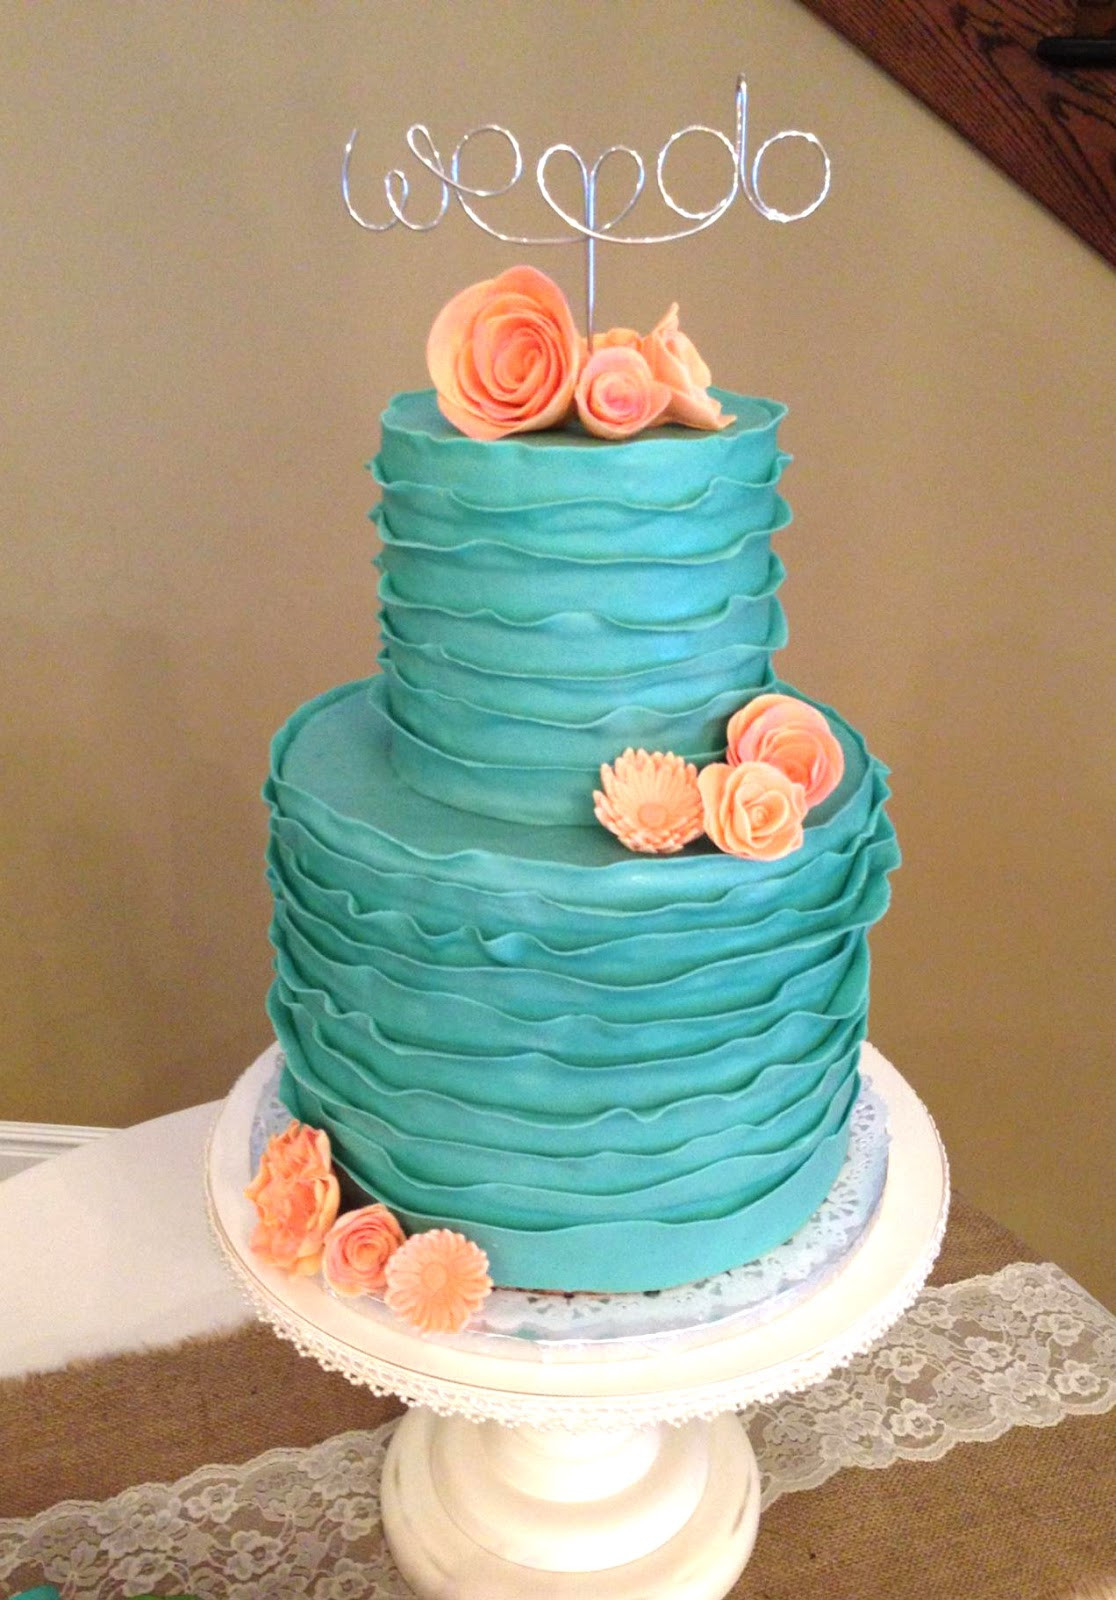 Turquoise Wedding Cake
 The Cake Market Turquoise Ruffle Wedding Cake